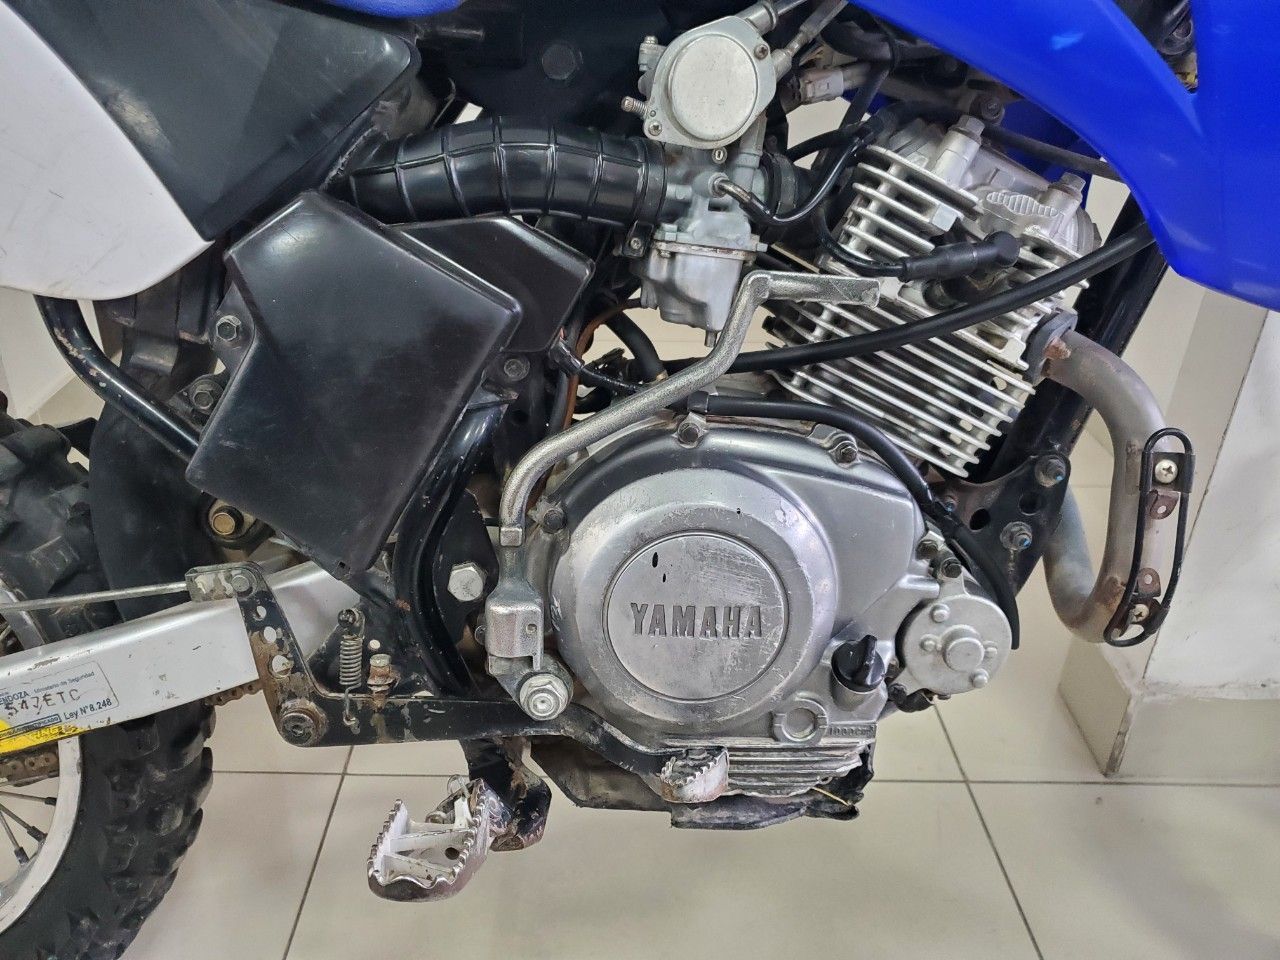 Yamaha TTR Usada en Mendoza, deRuedas